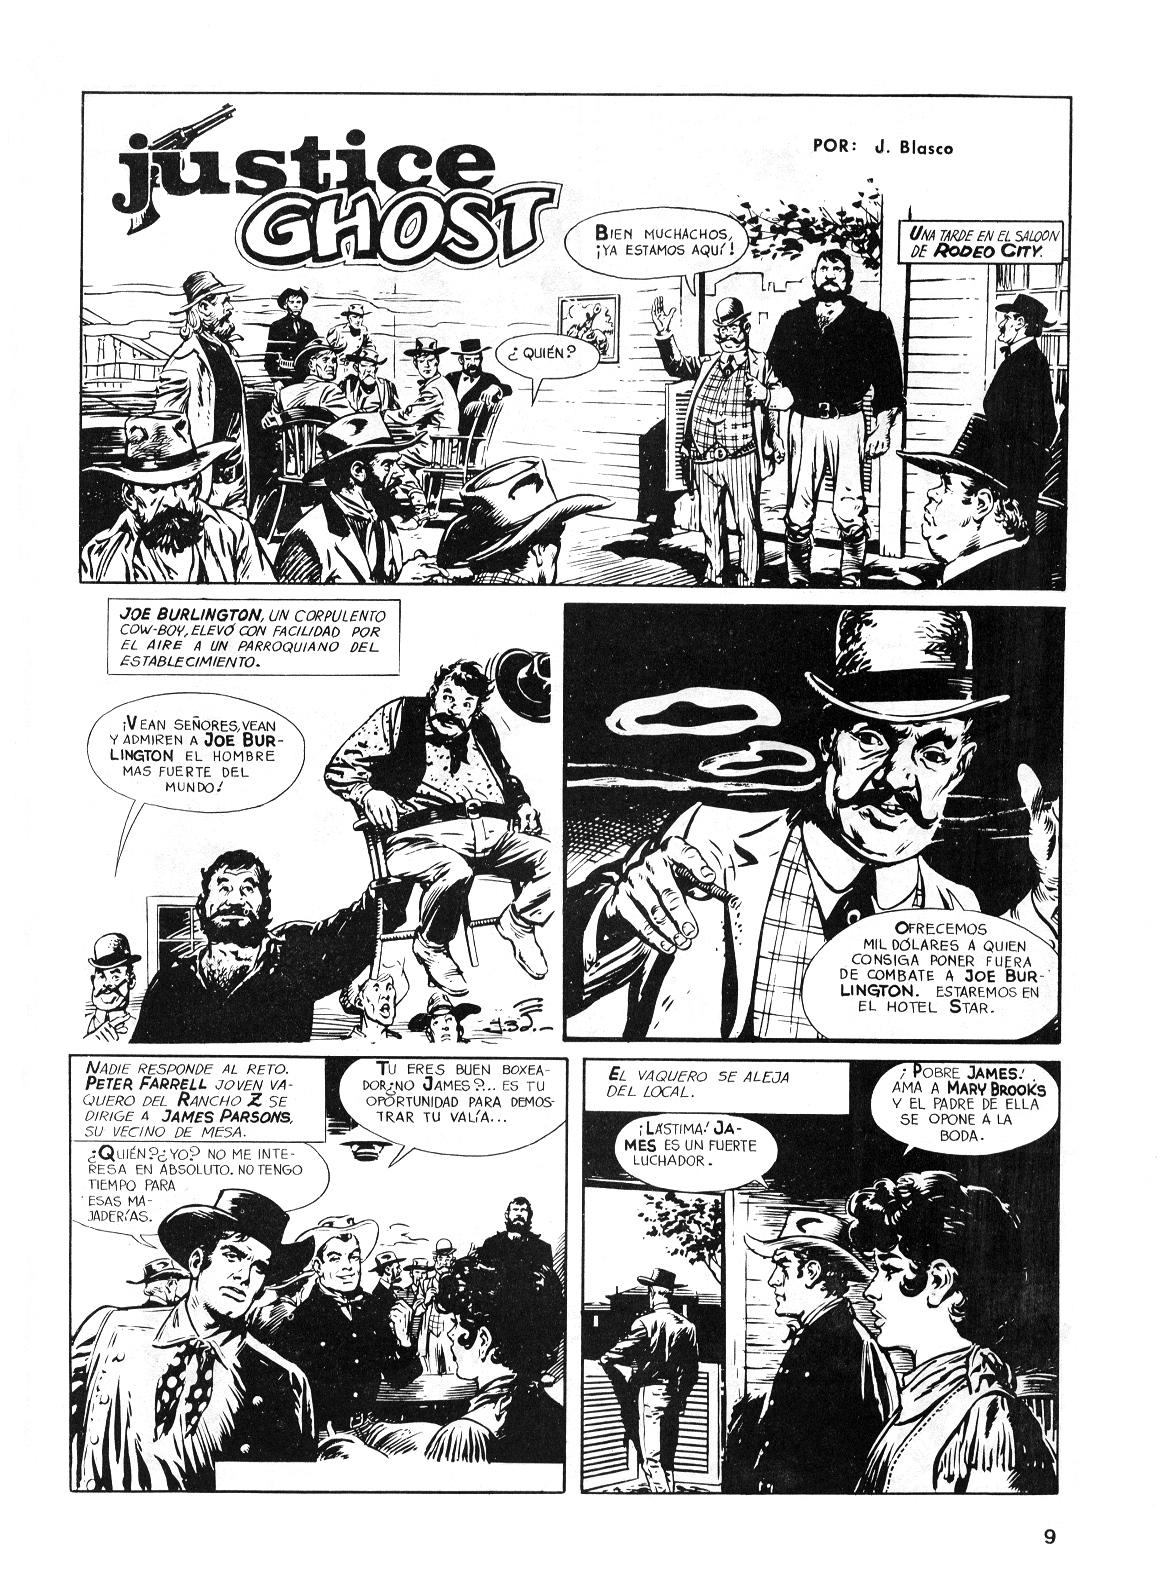 Encore un western de Blasco : « Justice Ghost », publié dans Chito.